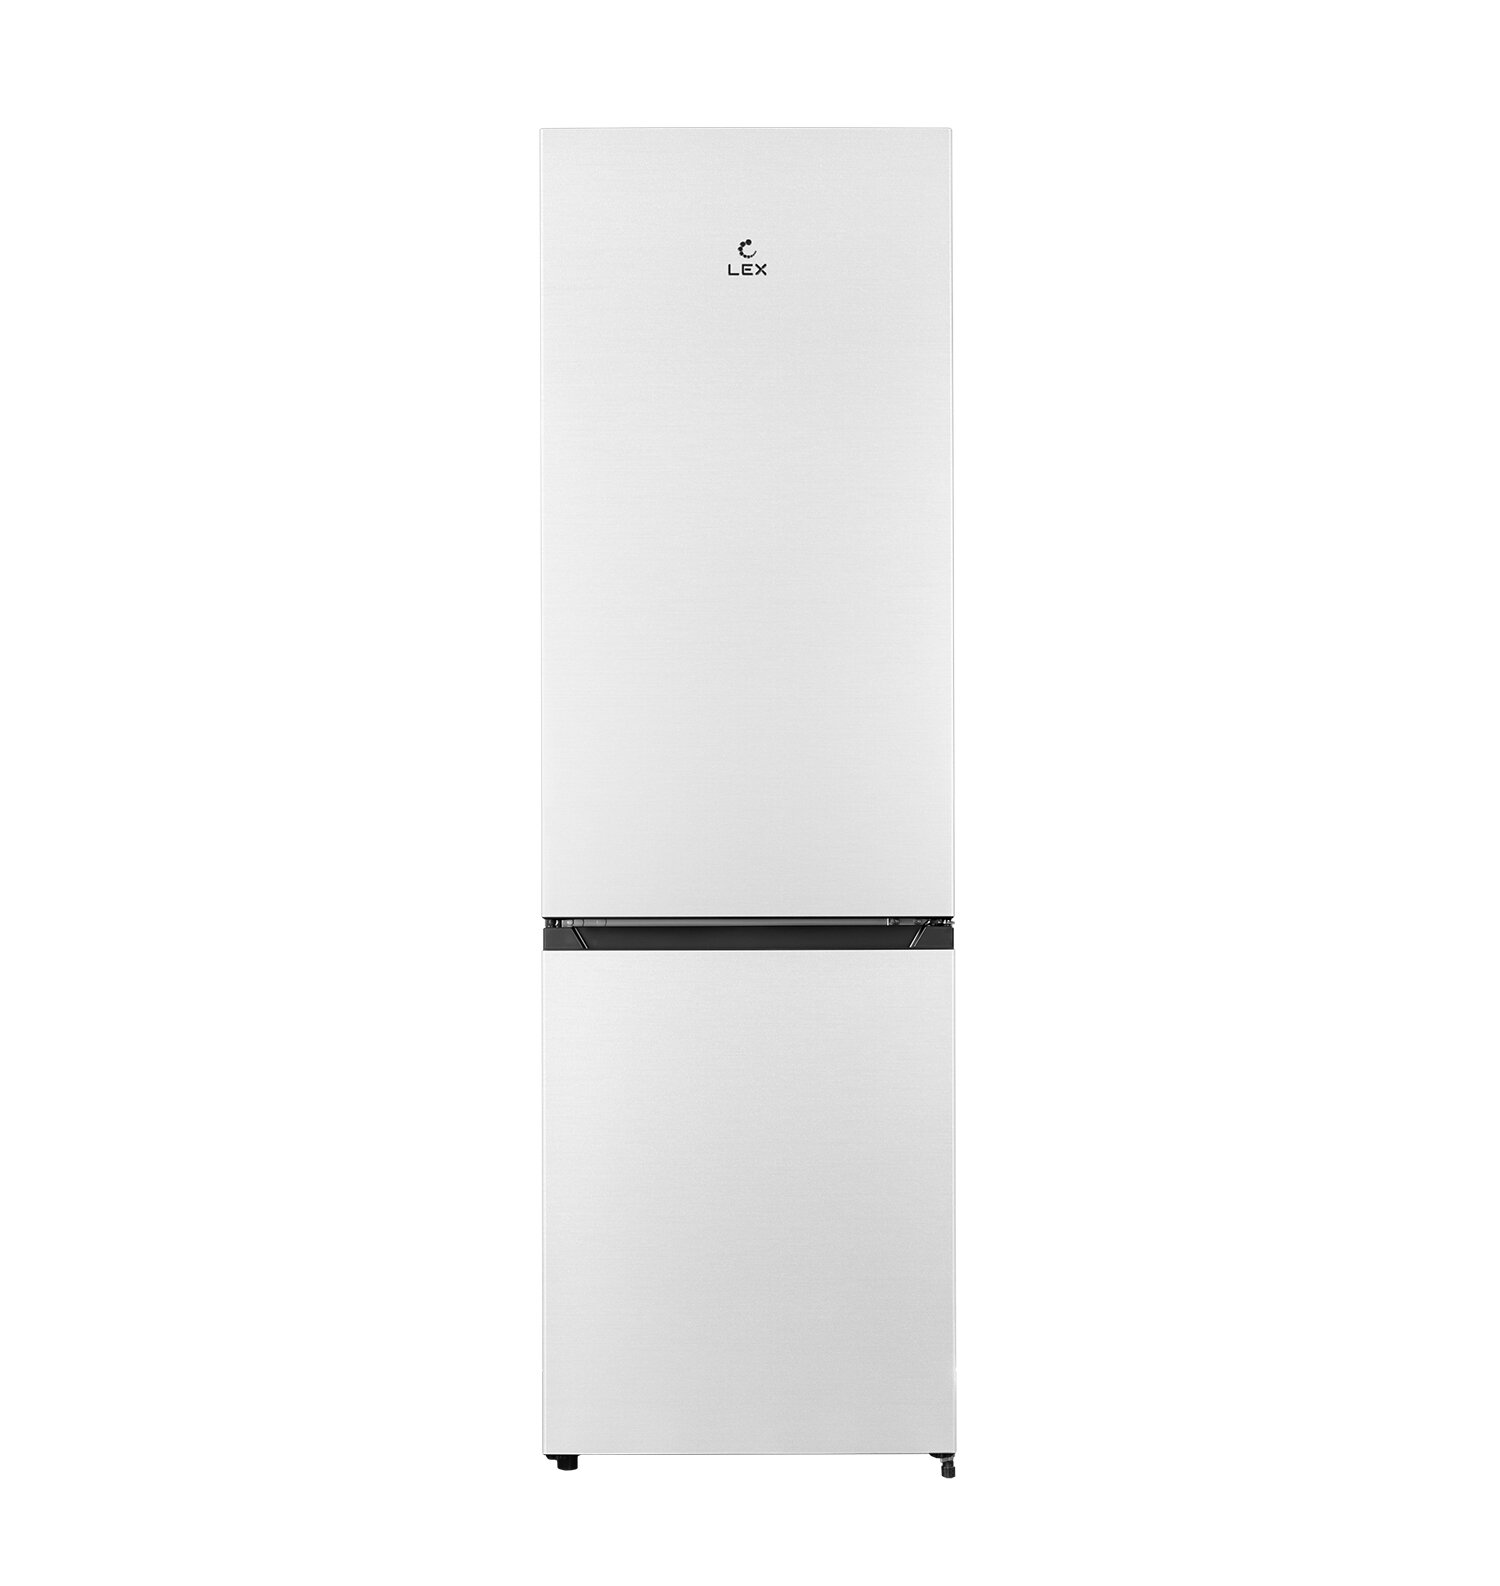 Холодильник Lex RFS 205 DF WH белый отдельностоящий двухкамерный